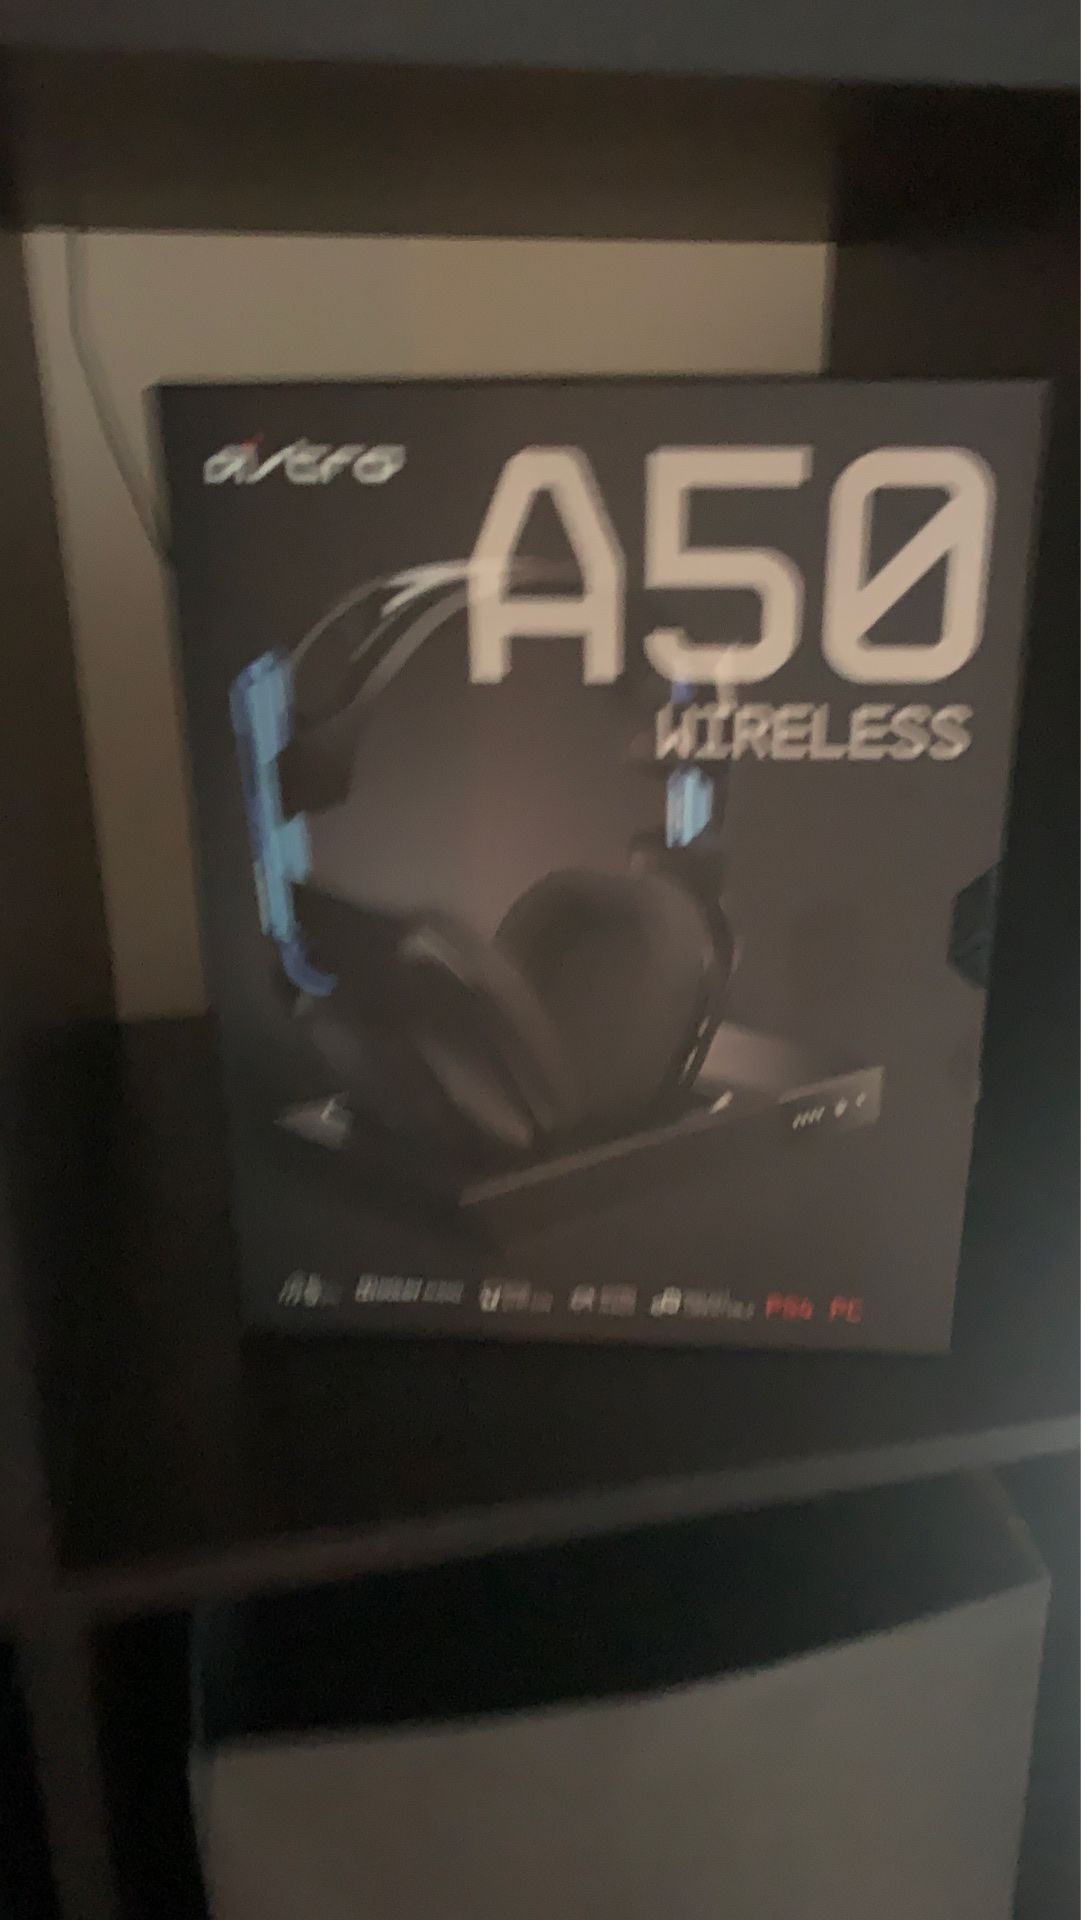 Astro a50